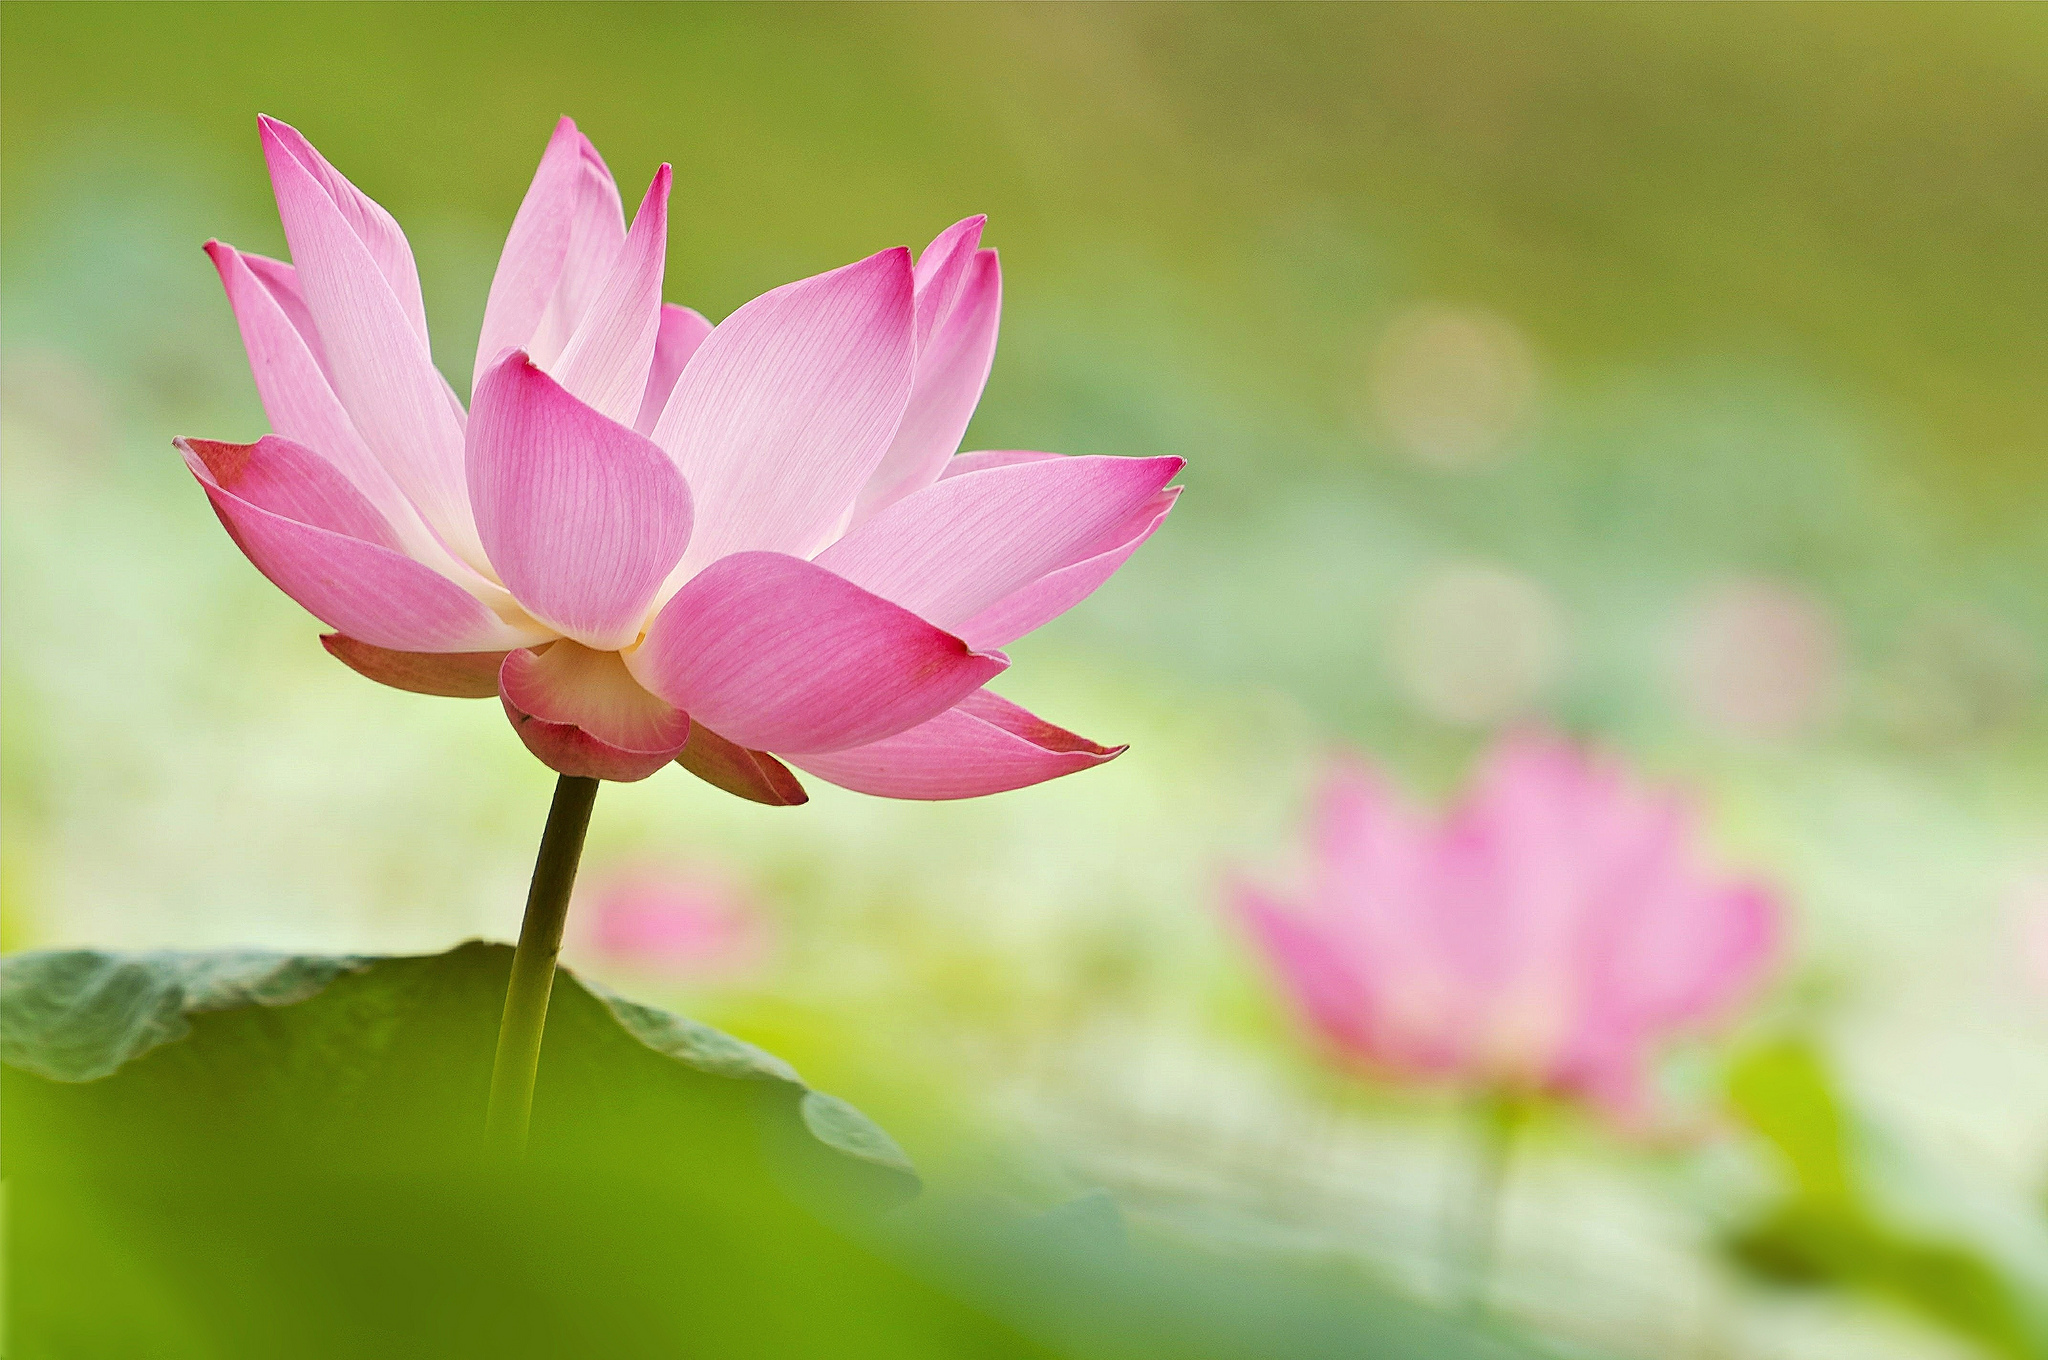 Hoa sen xinh đẹp sẽ mang lại cho bạn cảm giác tĩnh lặng, thanh thản. Những bức ảnh Lotus được chụp tình cờ hoặc điểm danh cho chúng đều tuyệt đẹp và đầy nghệ thuật, đặc biệt là ánh sáng, màu sắc, góc chụp. Hãy chiêm ngưỡng và cảm nhận sự tuyệt vời của hoa sen! 